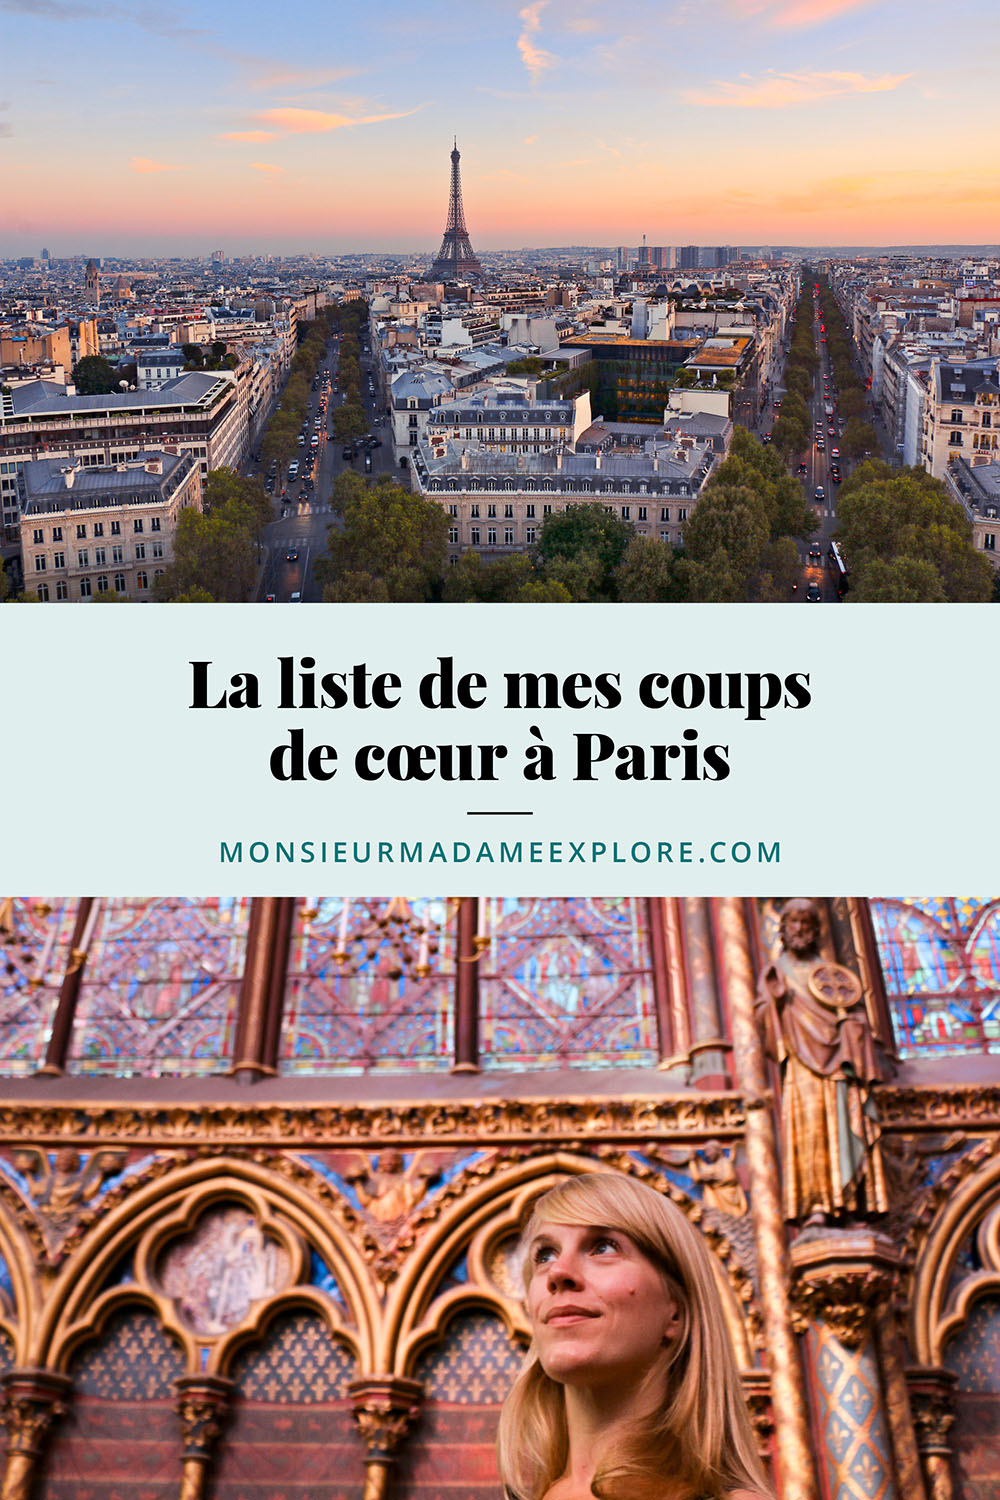 La liste de mes coups de cœur à Paris, Monsieur+Madame Explore, Blogue de voyage, France / My favorite places in Paris, France